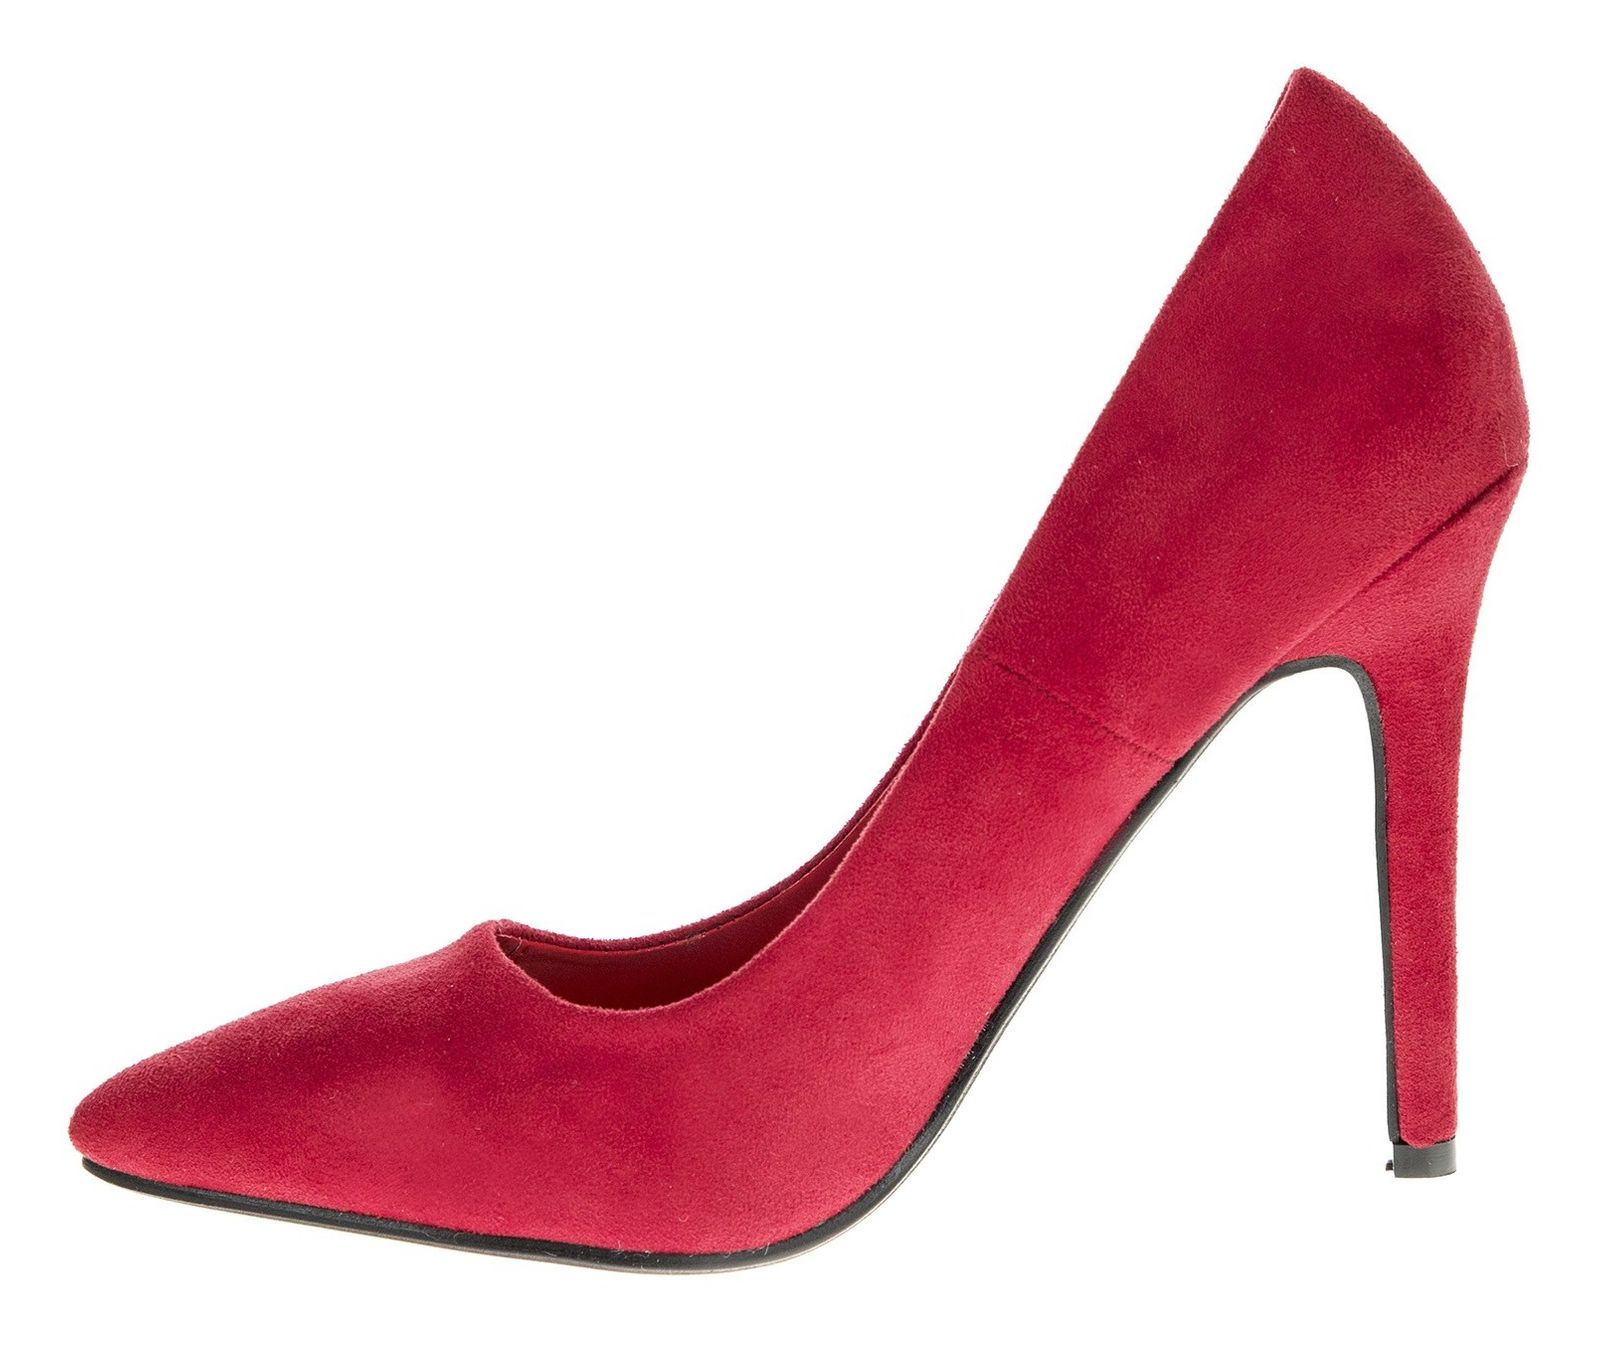 کفش پاشنه بلند زنانه - مادام - قرمز - 4